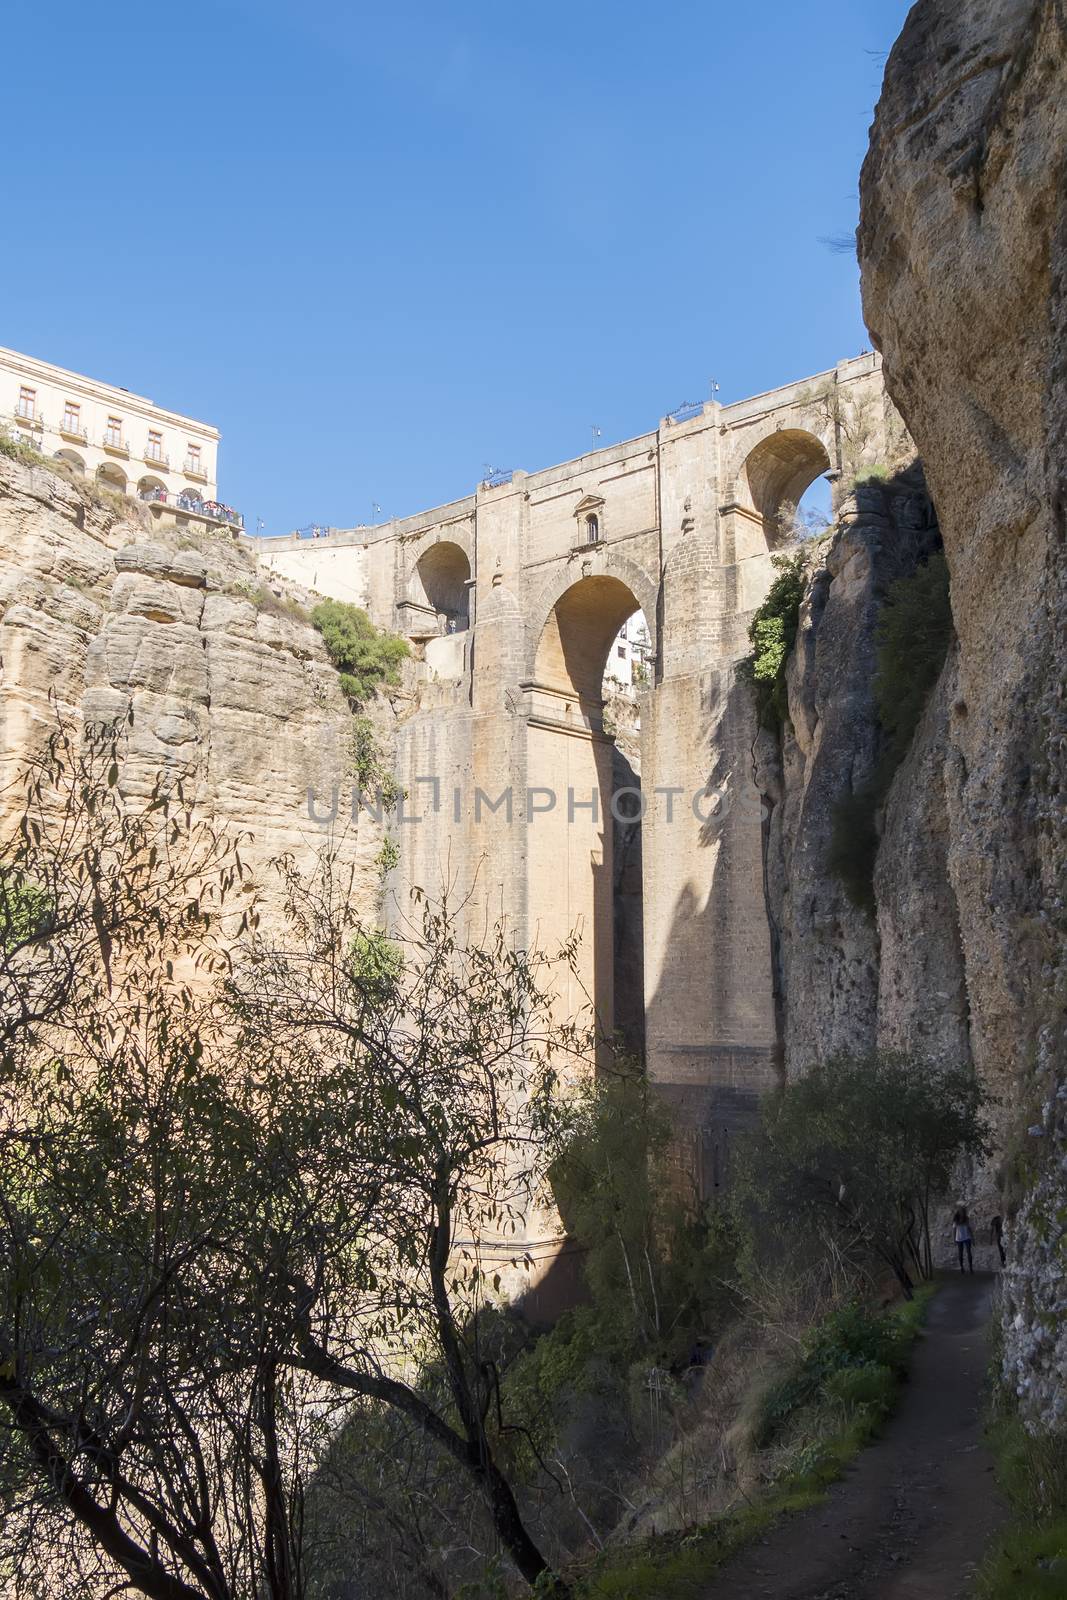 New Bridge over Guadalevin River in Ronda, Malaga, Spain. Popula by max8xam